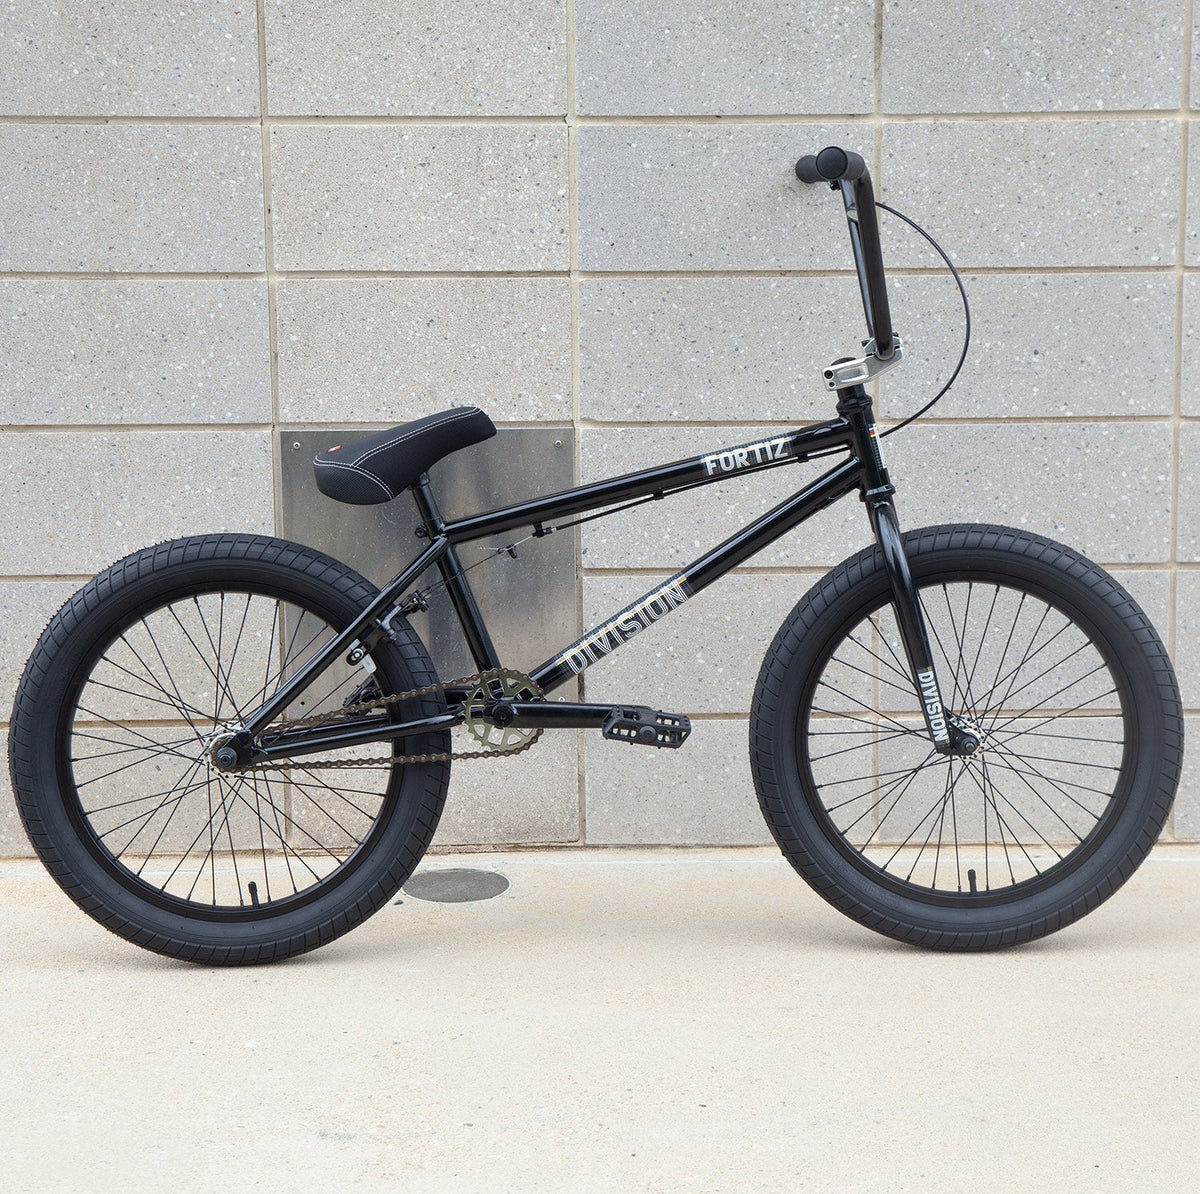 Division Fortiz BMX Bike | Buy now at Back Bone BMX shop